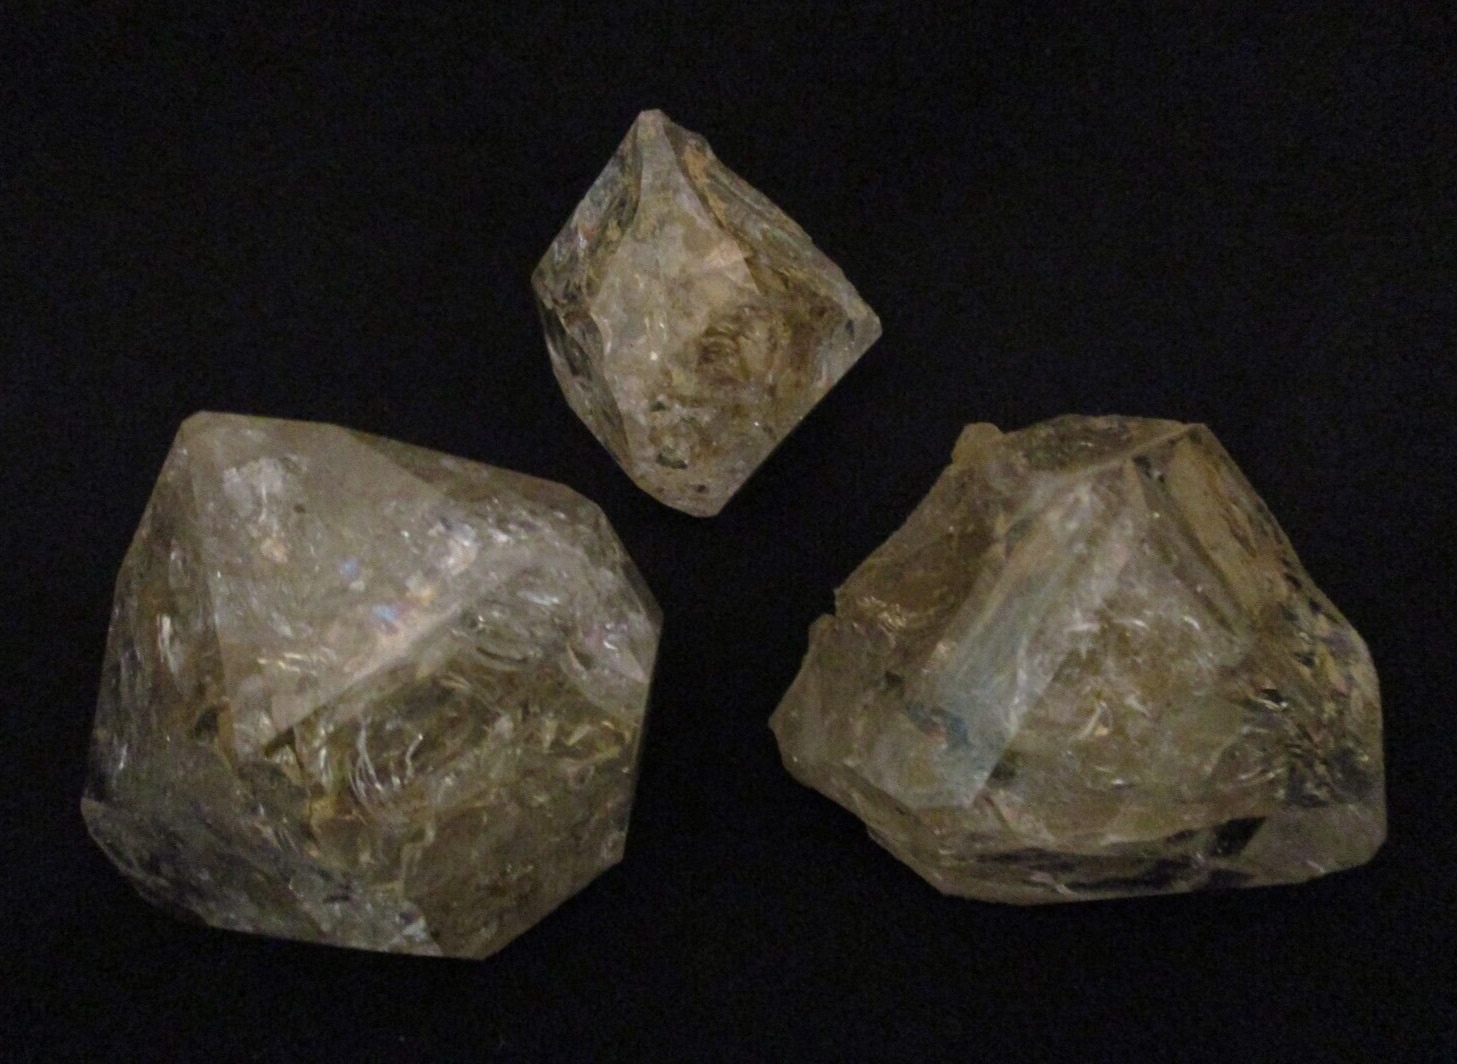 3 - Rare Hudson Valley Quartz Crystal Specimens E1720